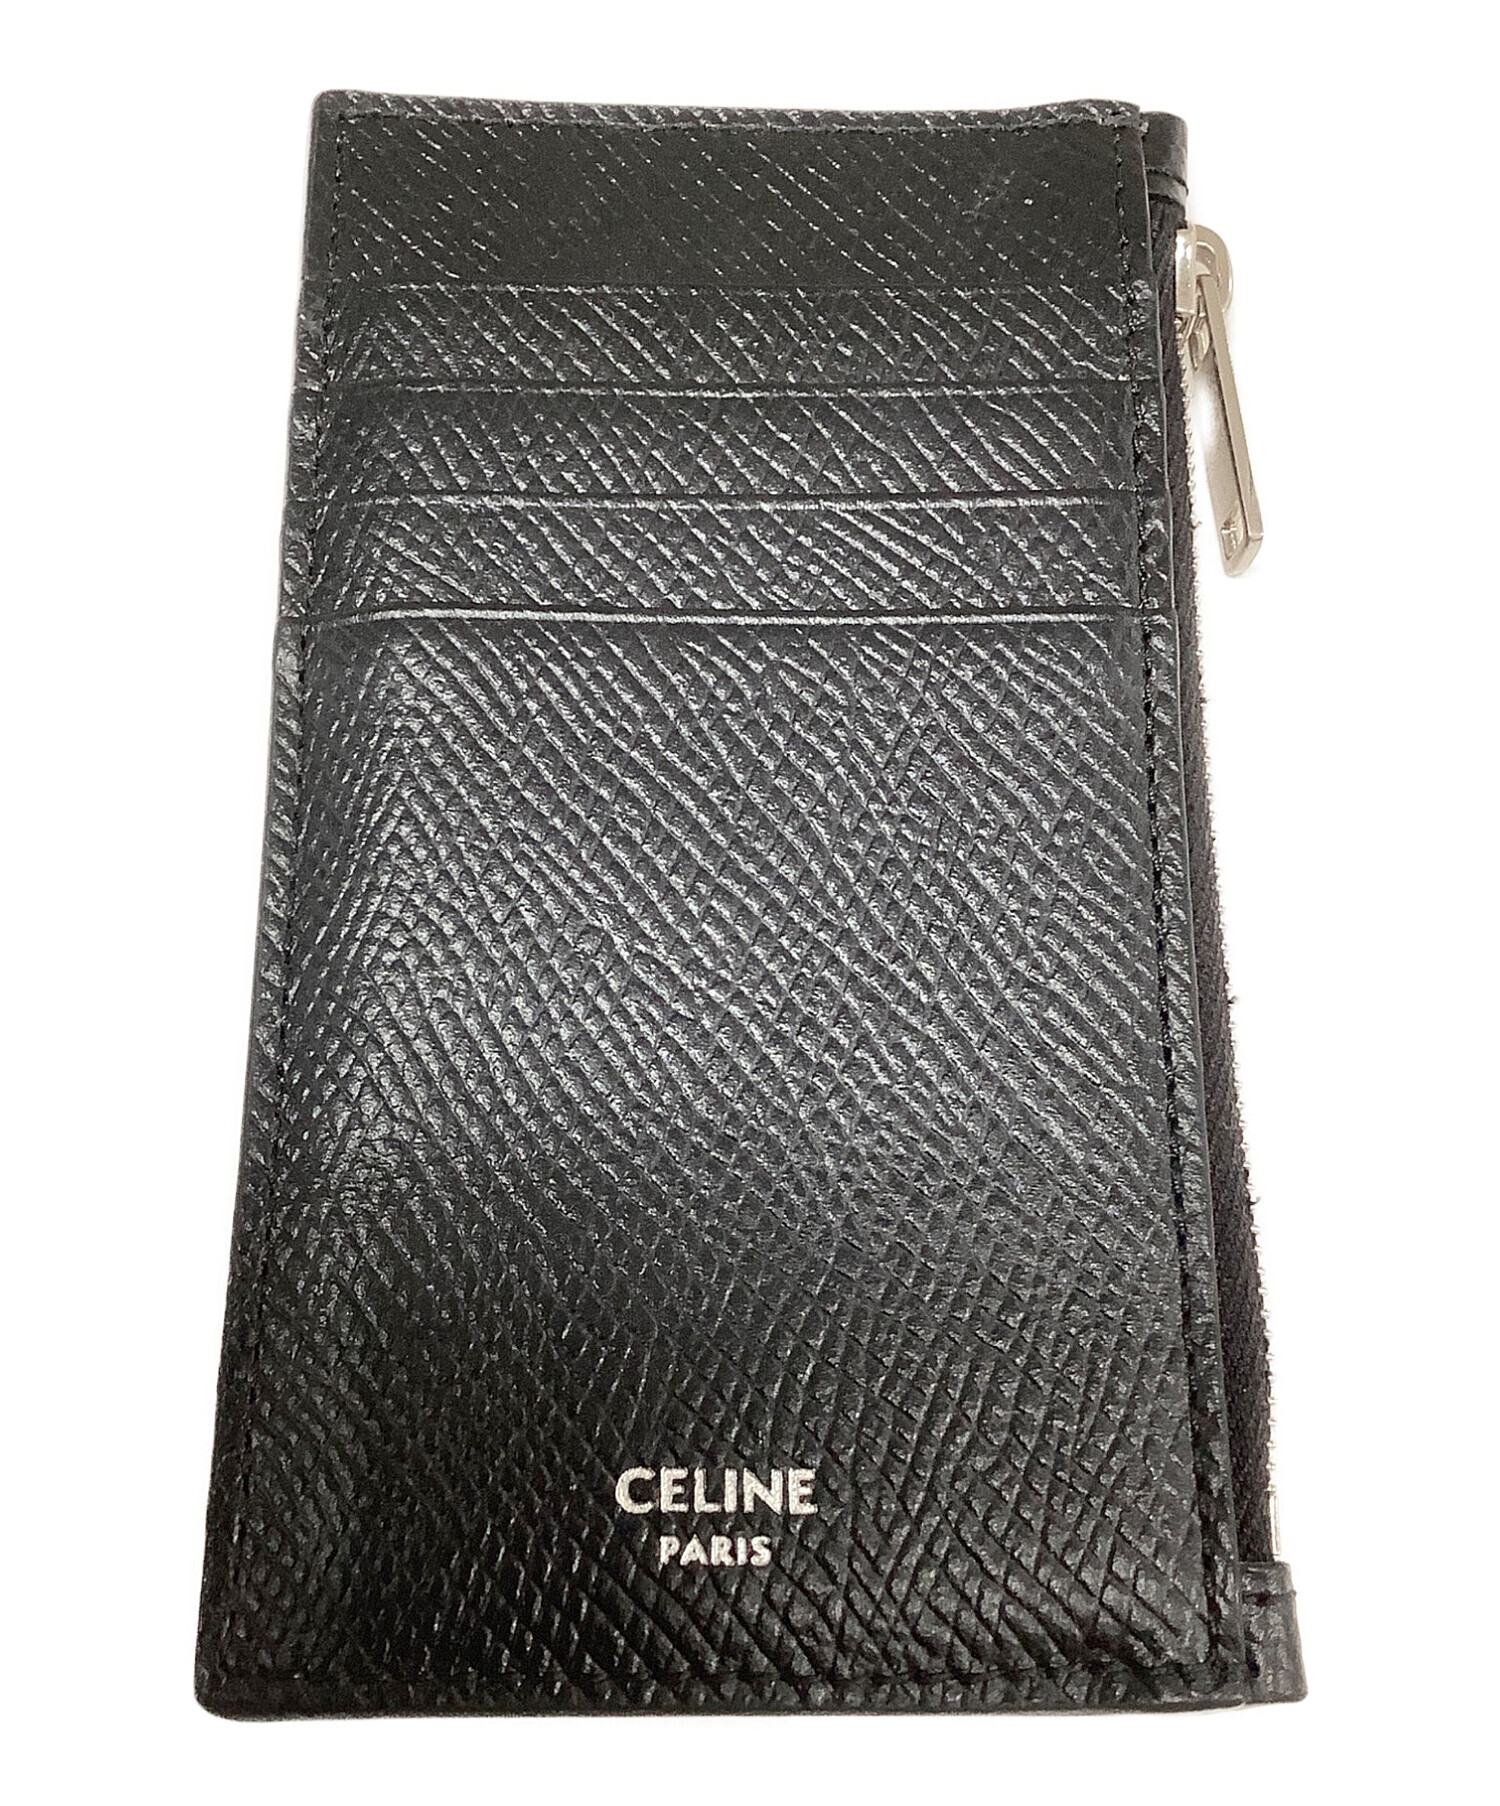 CELINE (セリーヌ) コンパクト ジップドカードホルダー / ブラック